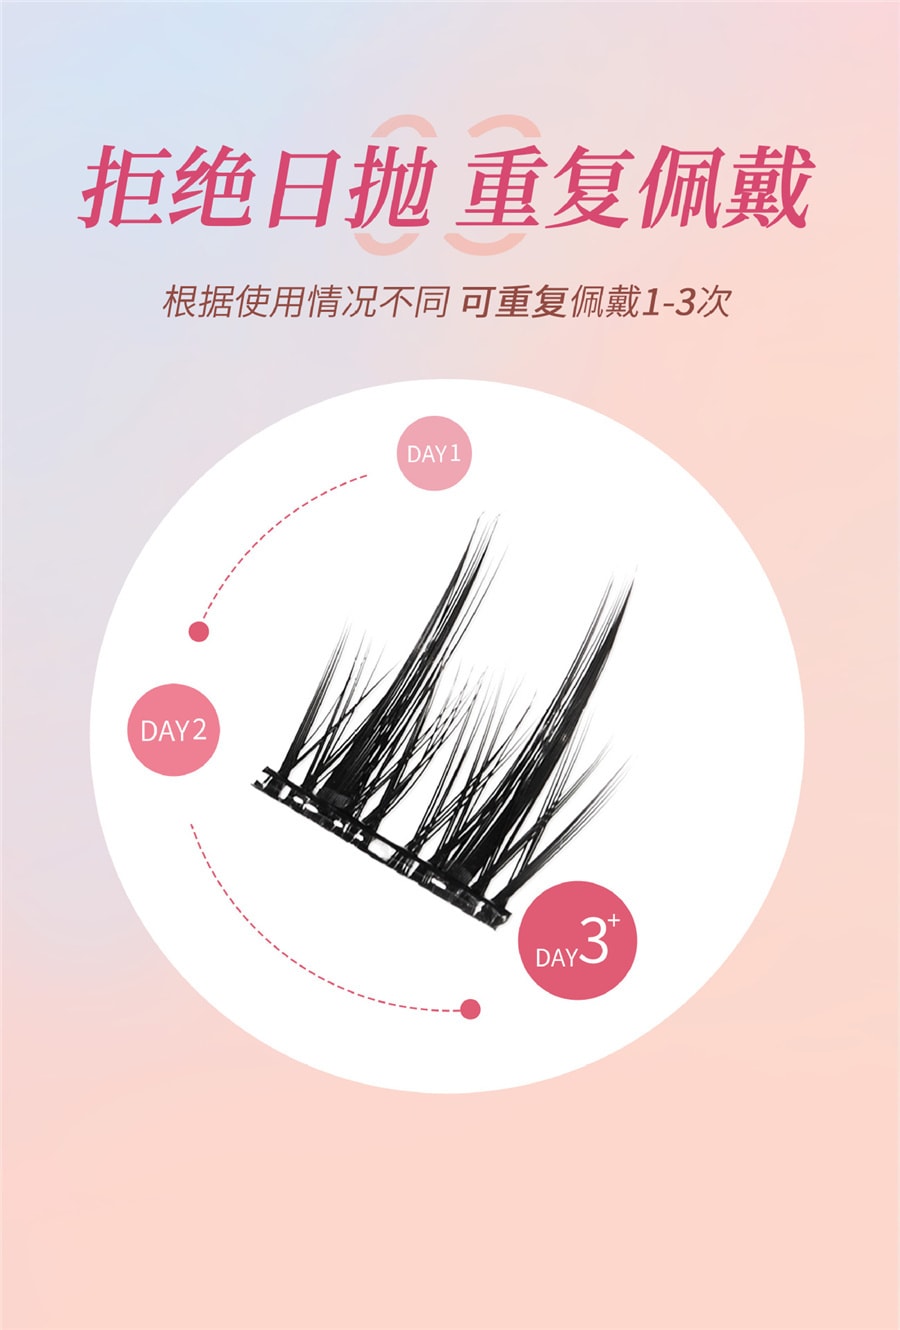 【中国直邮】BQI  免胶假睫毛 可重复使用 新手睫毛 - 纯欲太阳花 1盒丨*预计到达时间3-4周